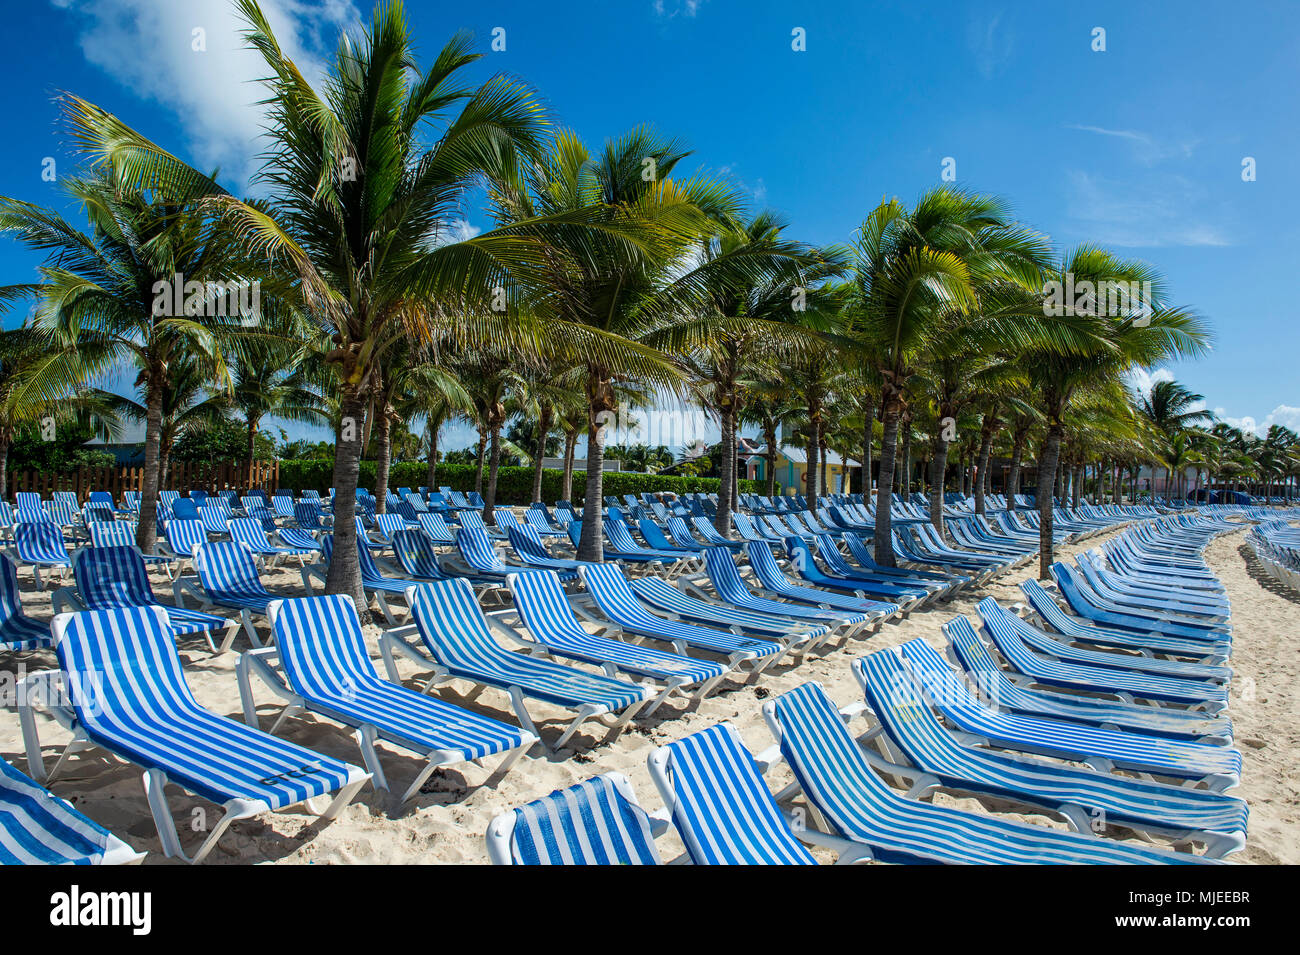 Molte sedie a sdraio in spiaggia per la nave da crociera di turisti, Norman Saunders beach, Grand Turk, Turks e Caicos Foto Stock